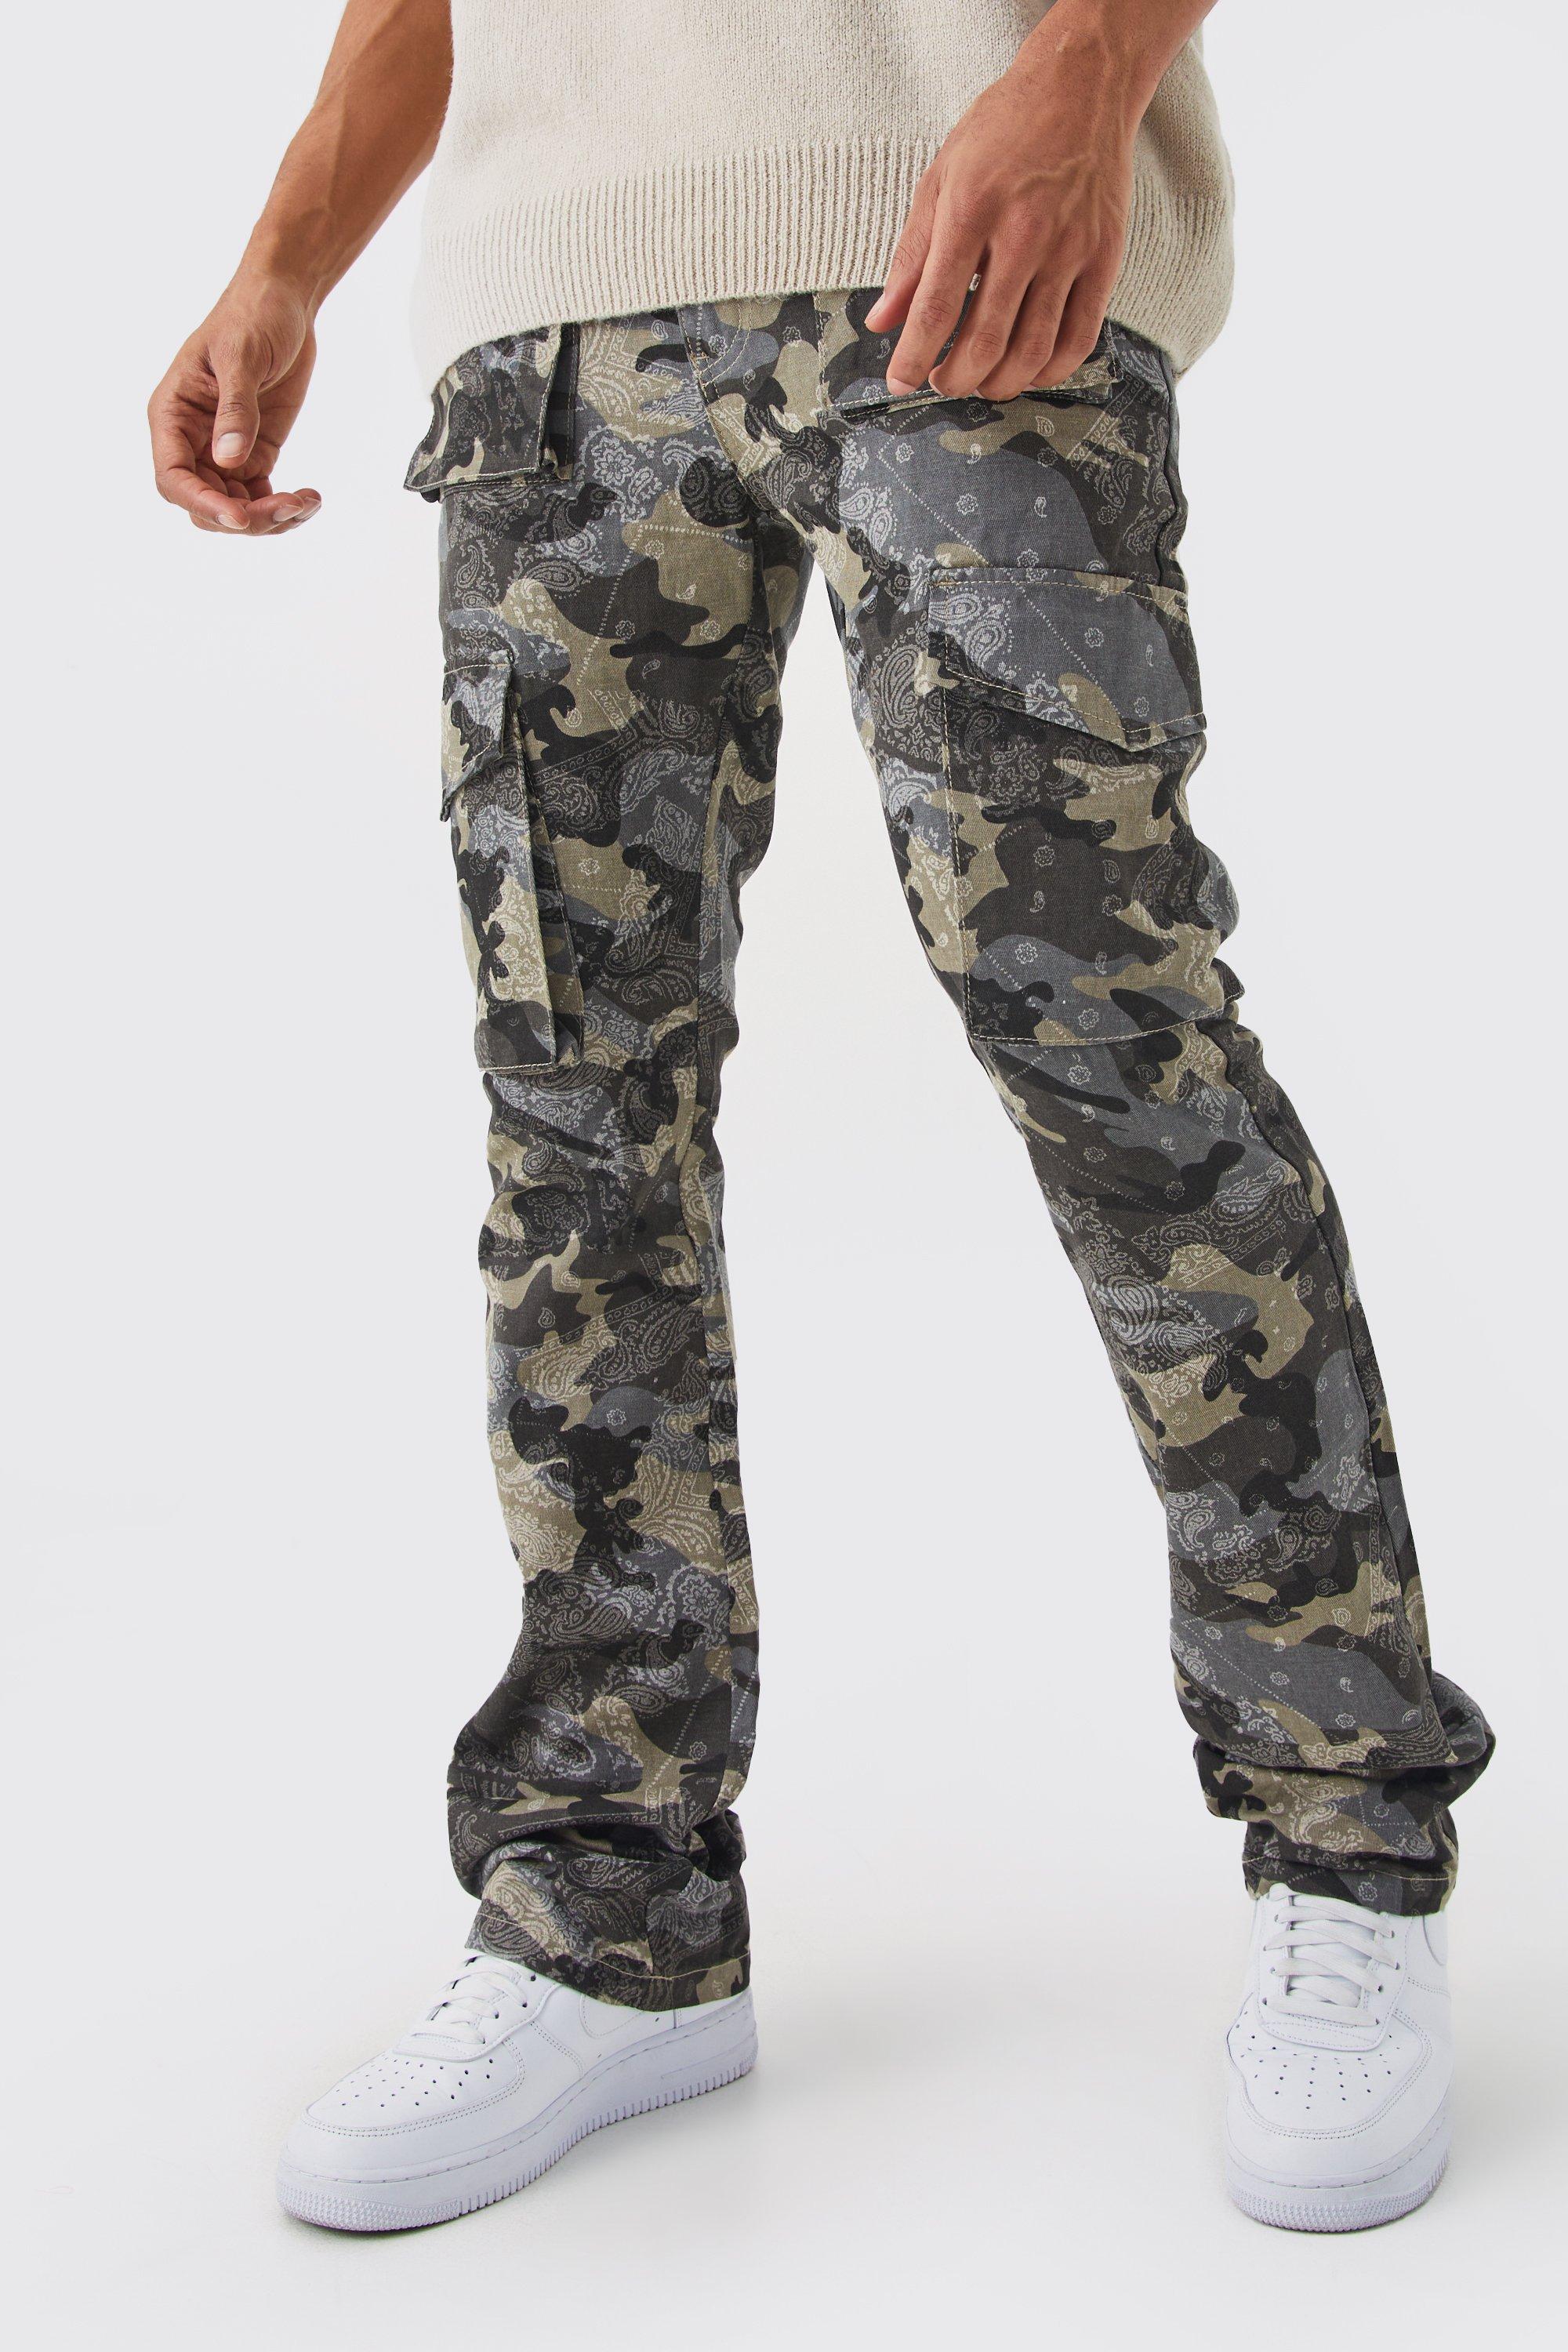 pantalon cargo slim à imprimé bandana homme - gris - 34, gris